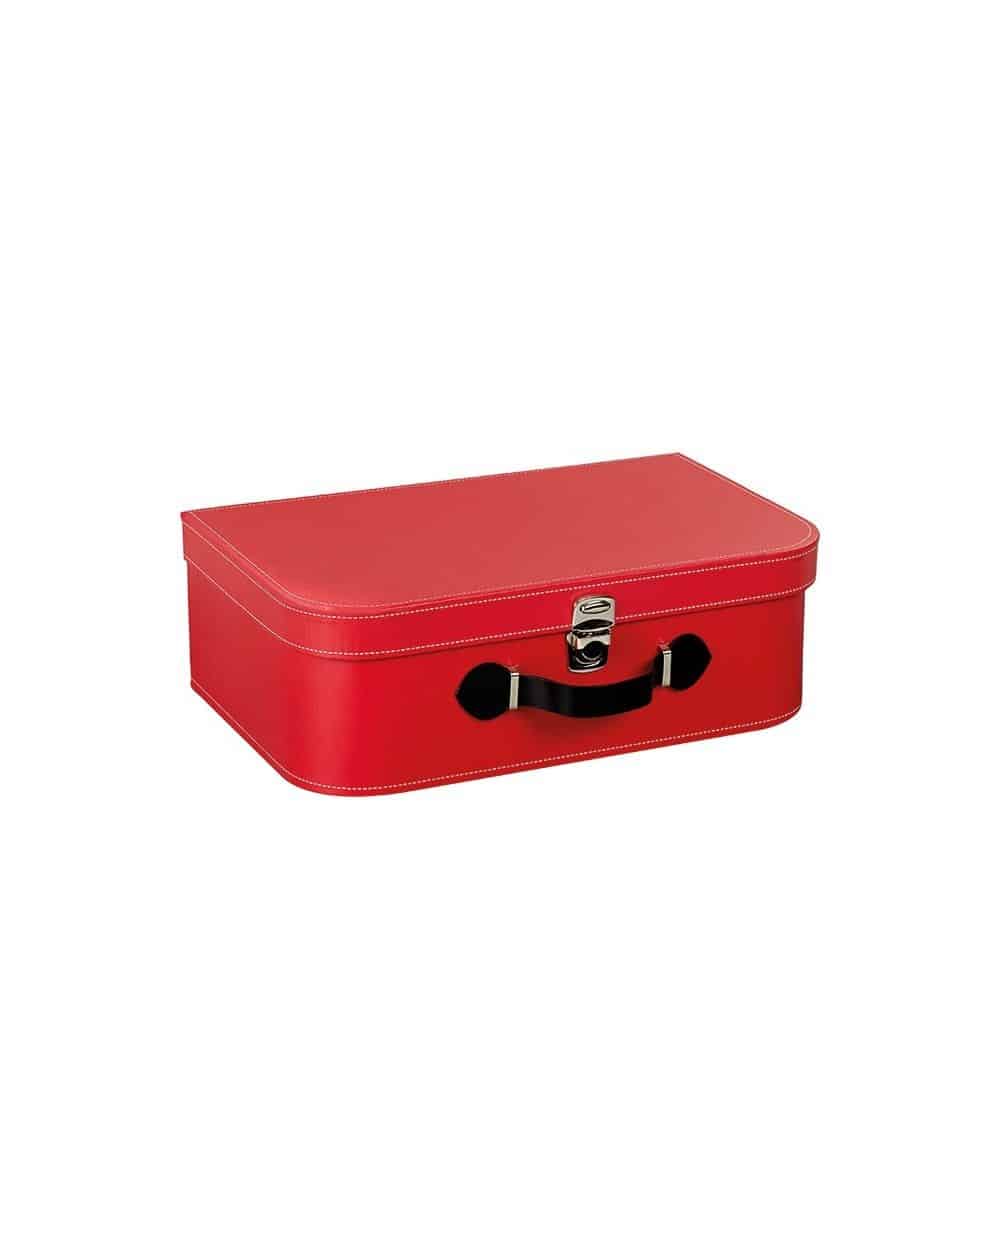 Valise rectangle rouge avec poignée